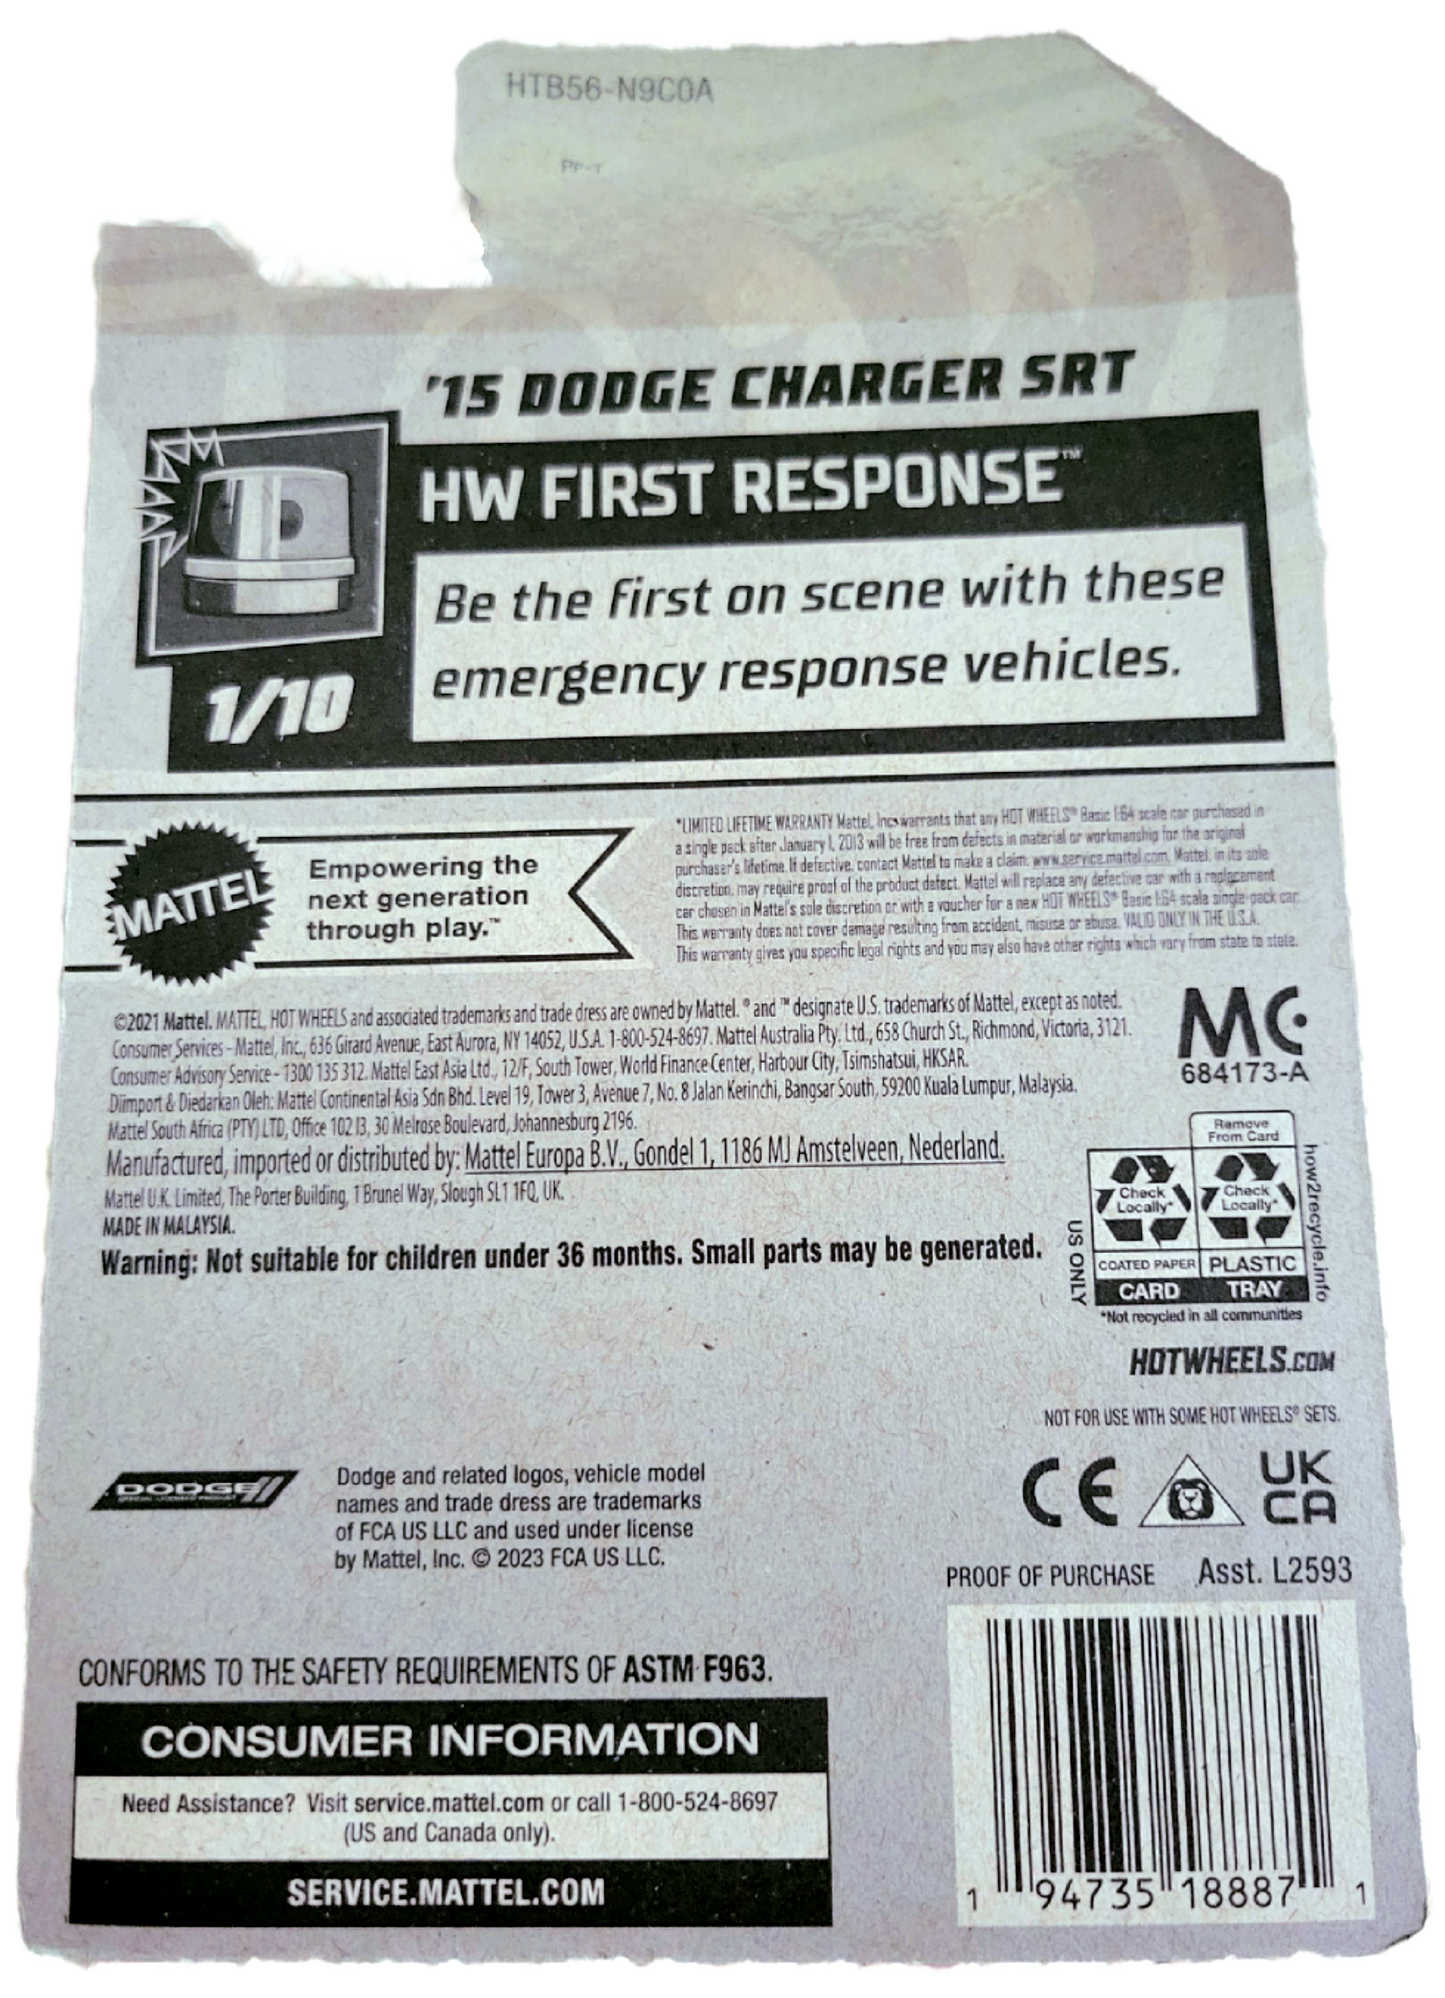 Mattel Hotwheels HW First Response '15 Dodge Charger SRT 1/10 Car